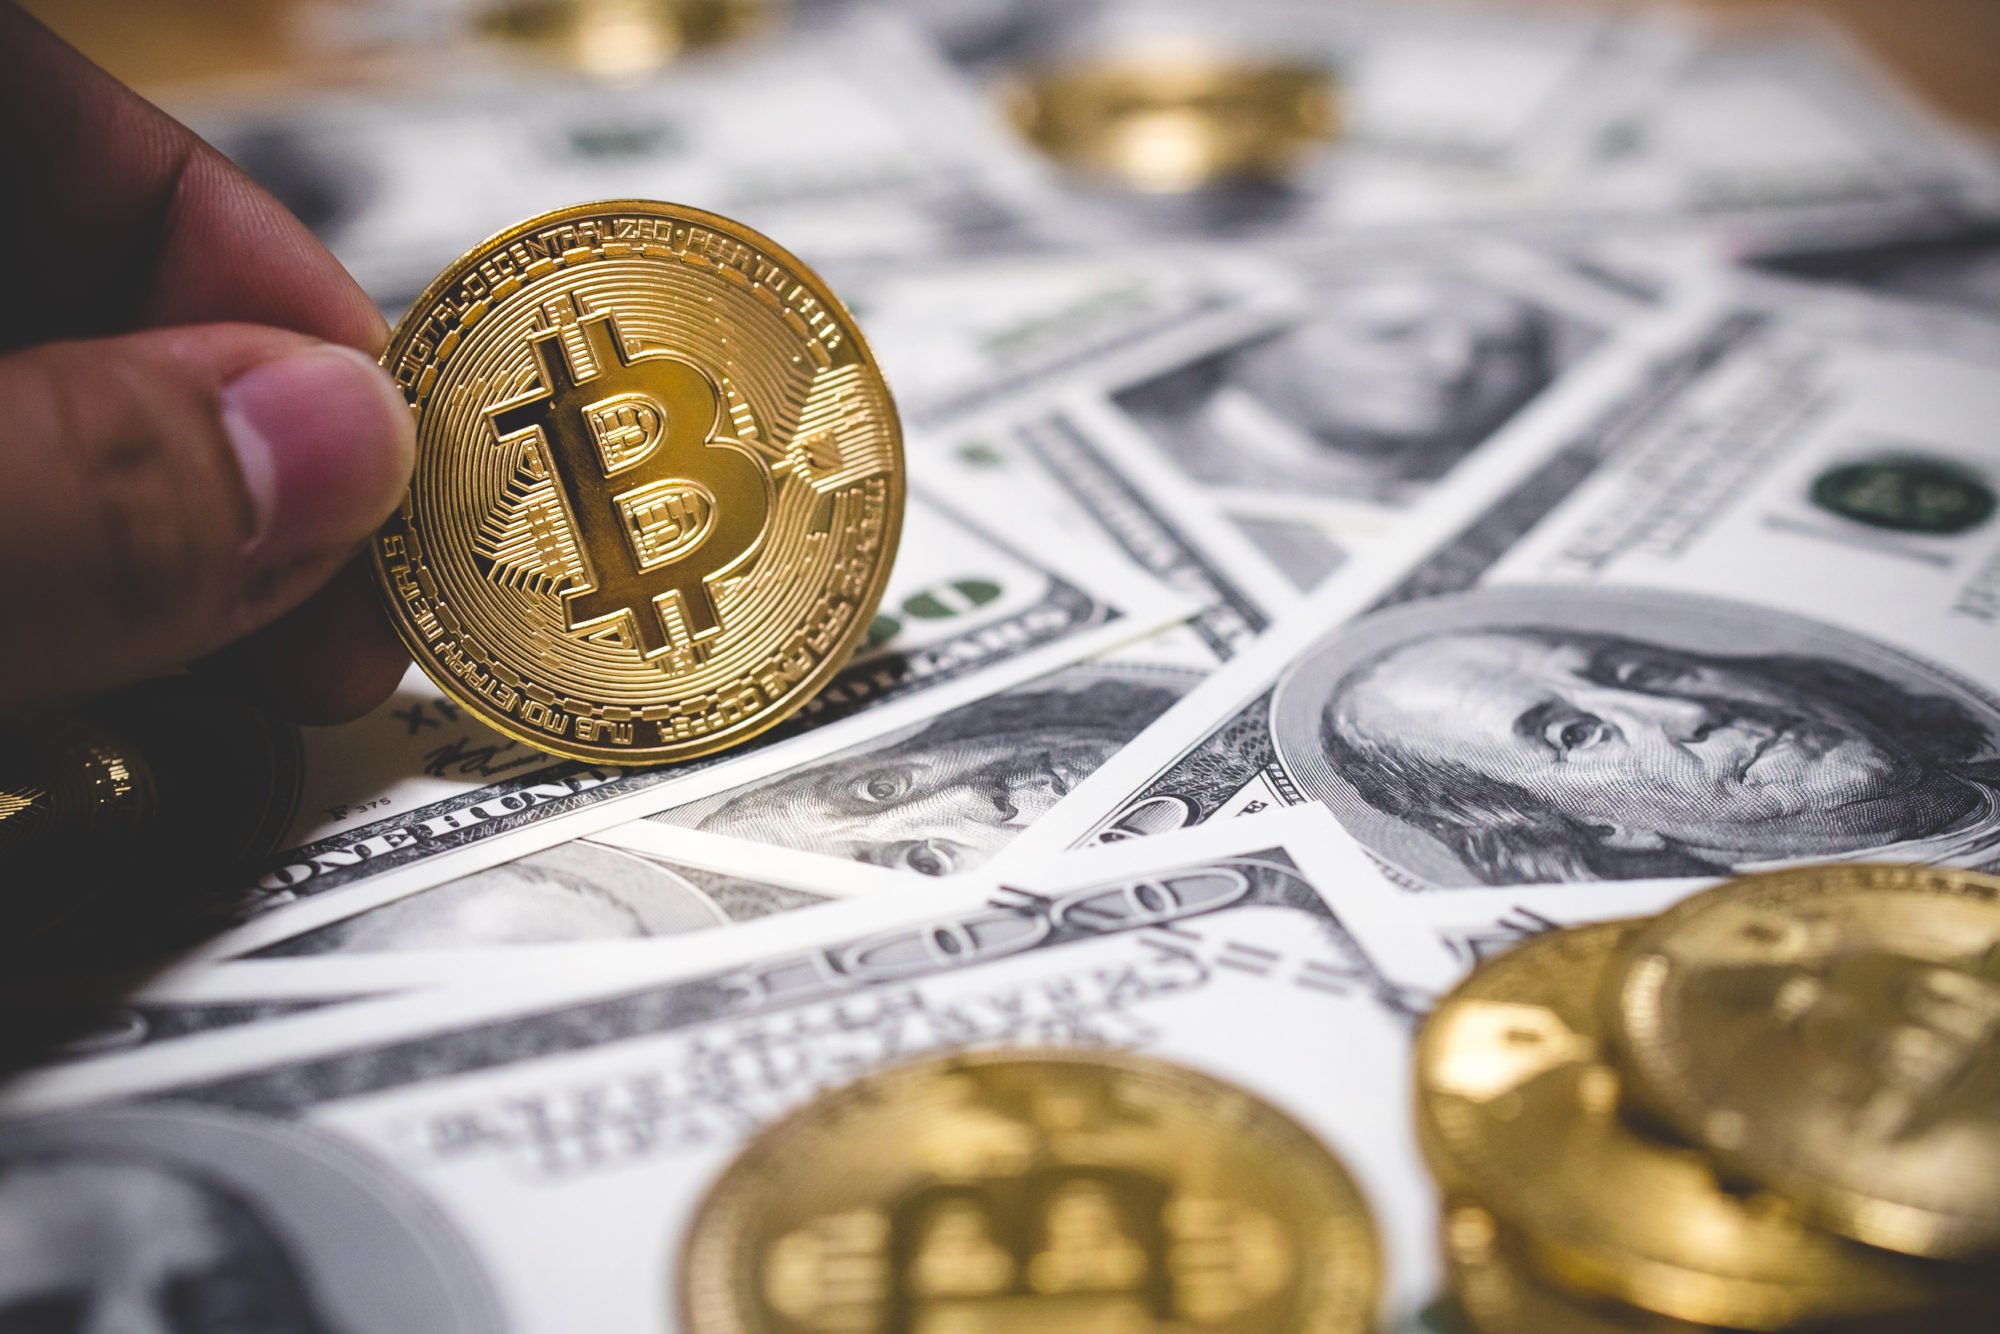  fundstrat bitcoin 2019 fundamentals improve should positive 